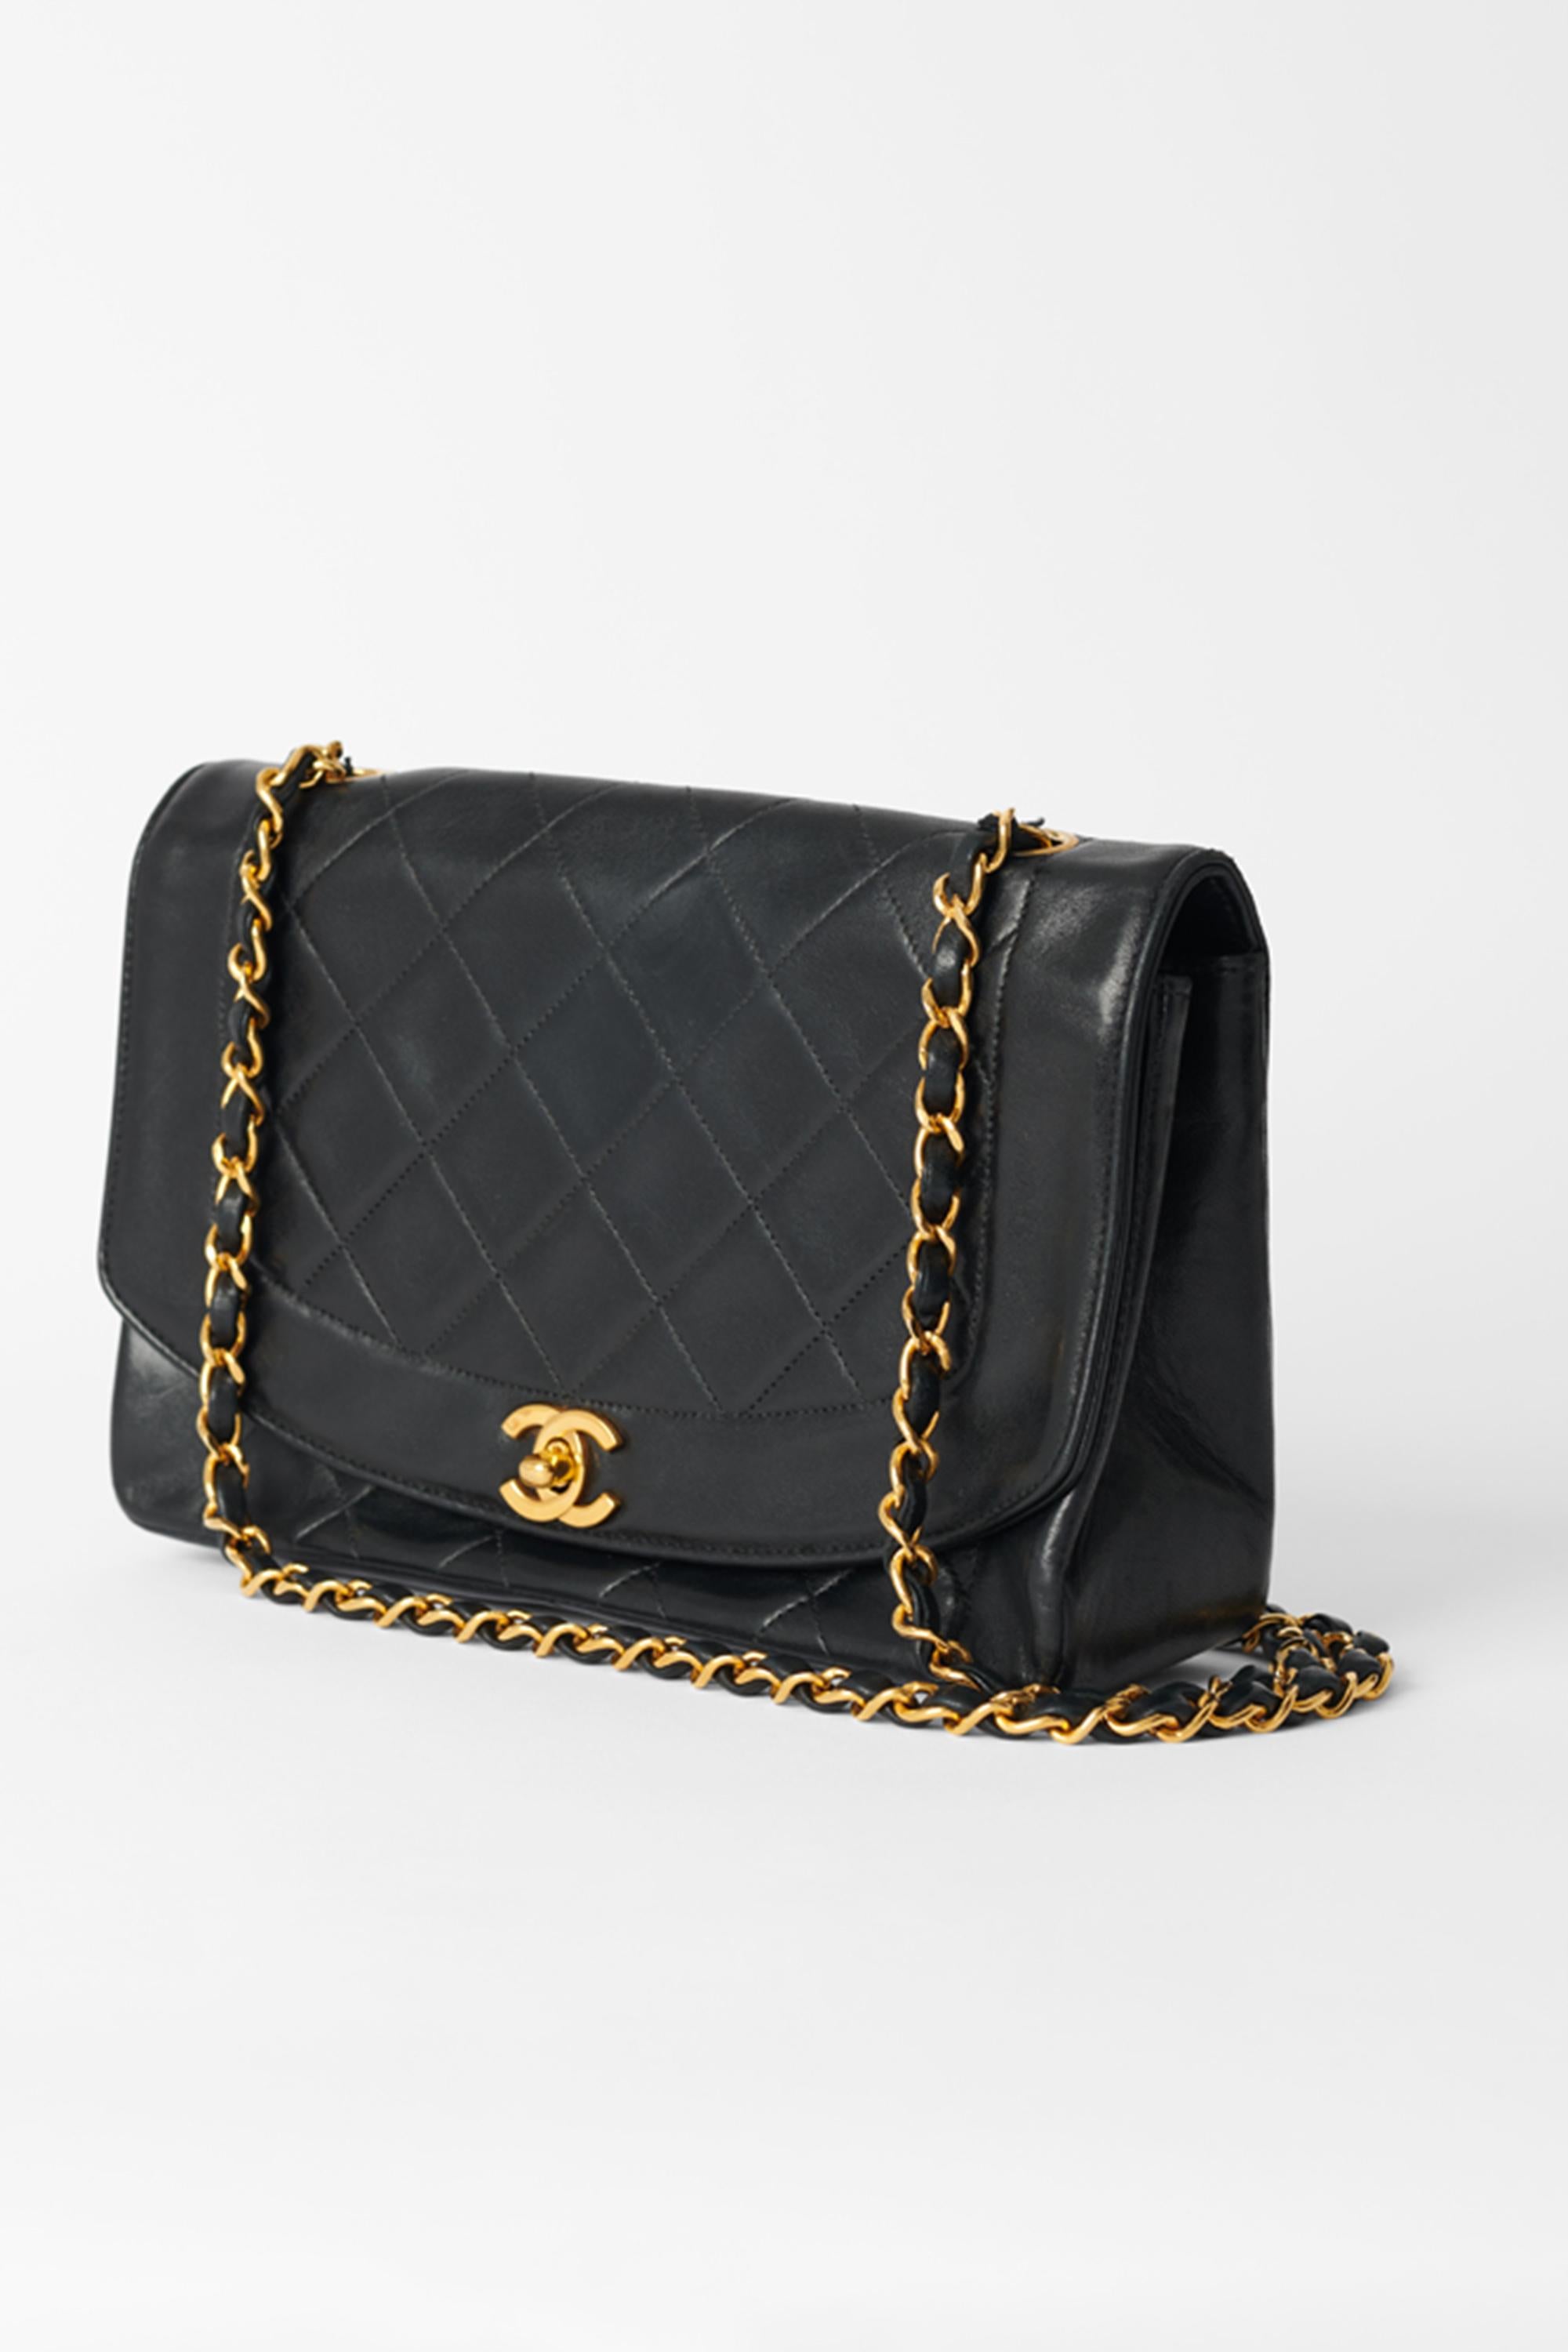 Black Chanel Vintage 1991/92 Diana Flap Bag